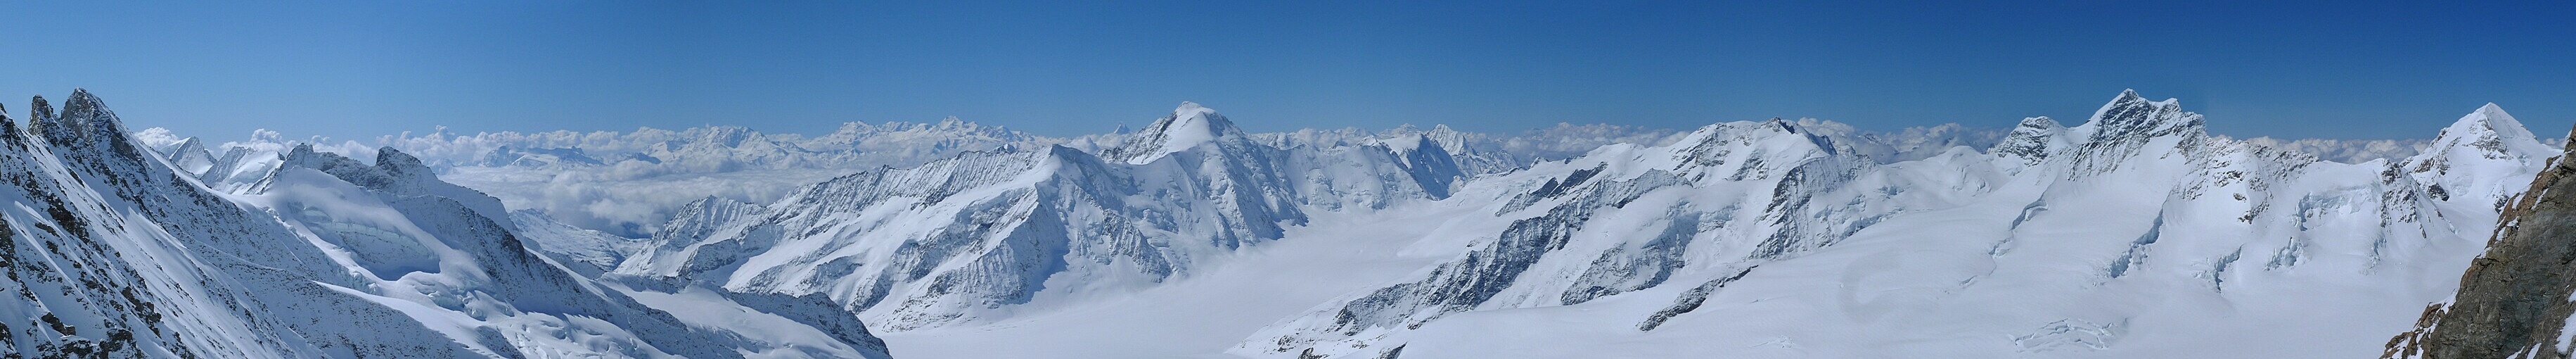 Hinteres Fiescherhorn Berner Alpen / Alpes bernoises Švýcarsko panorama 53